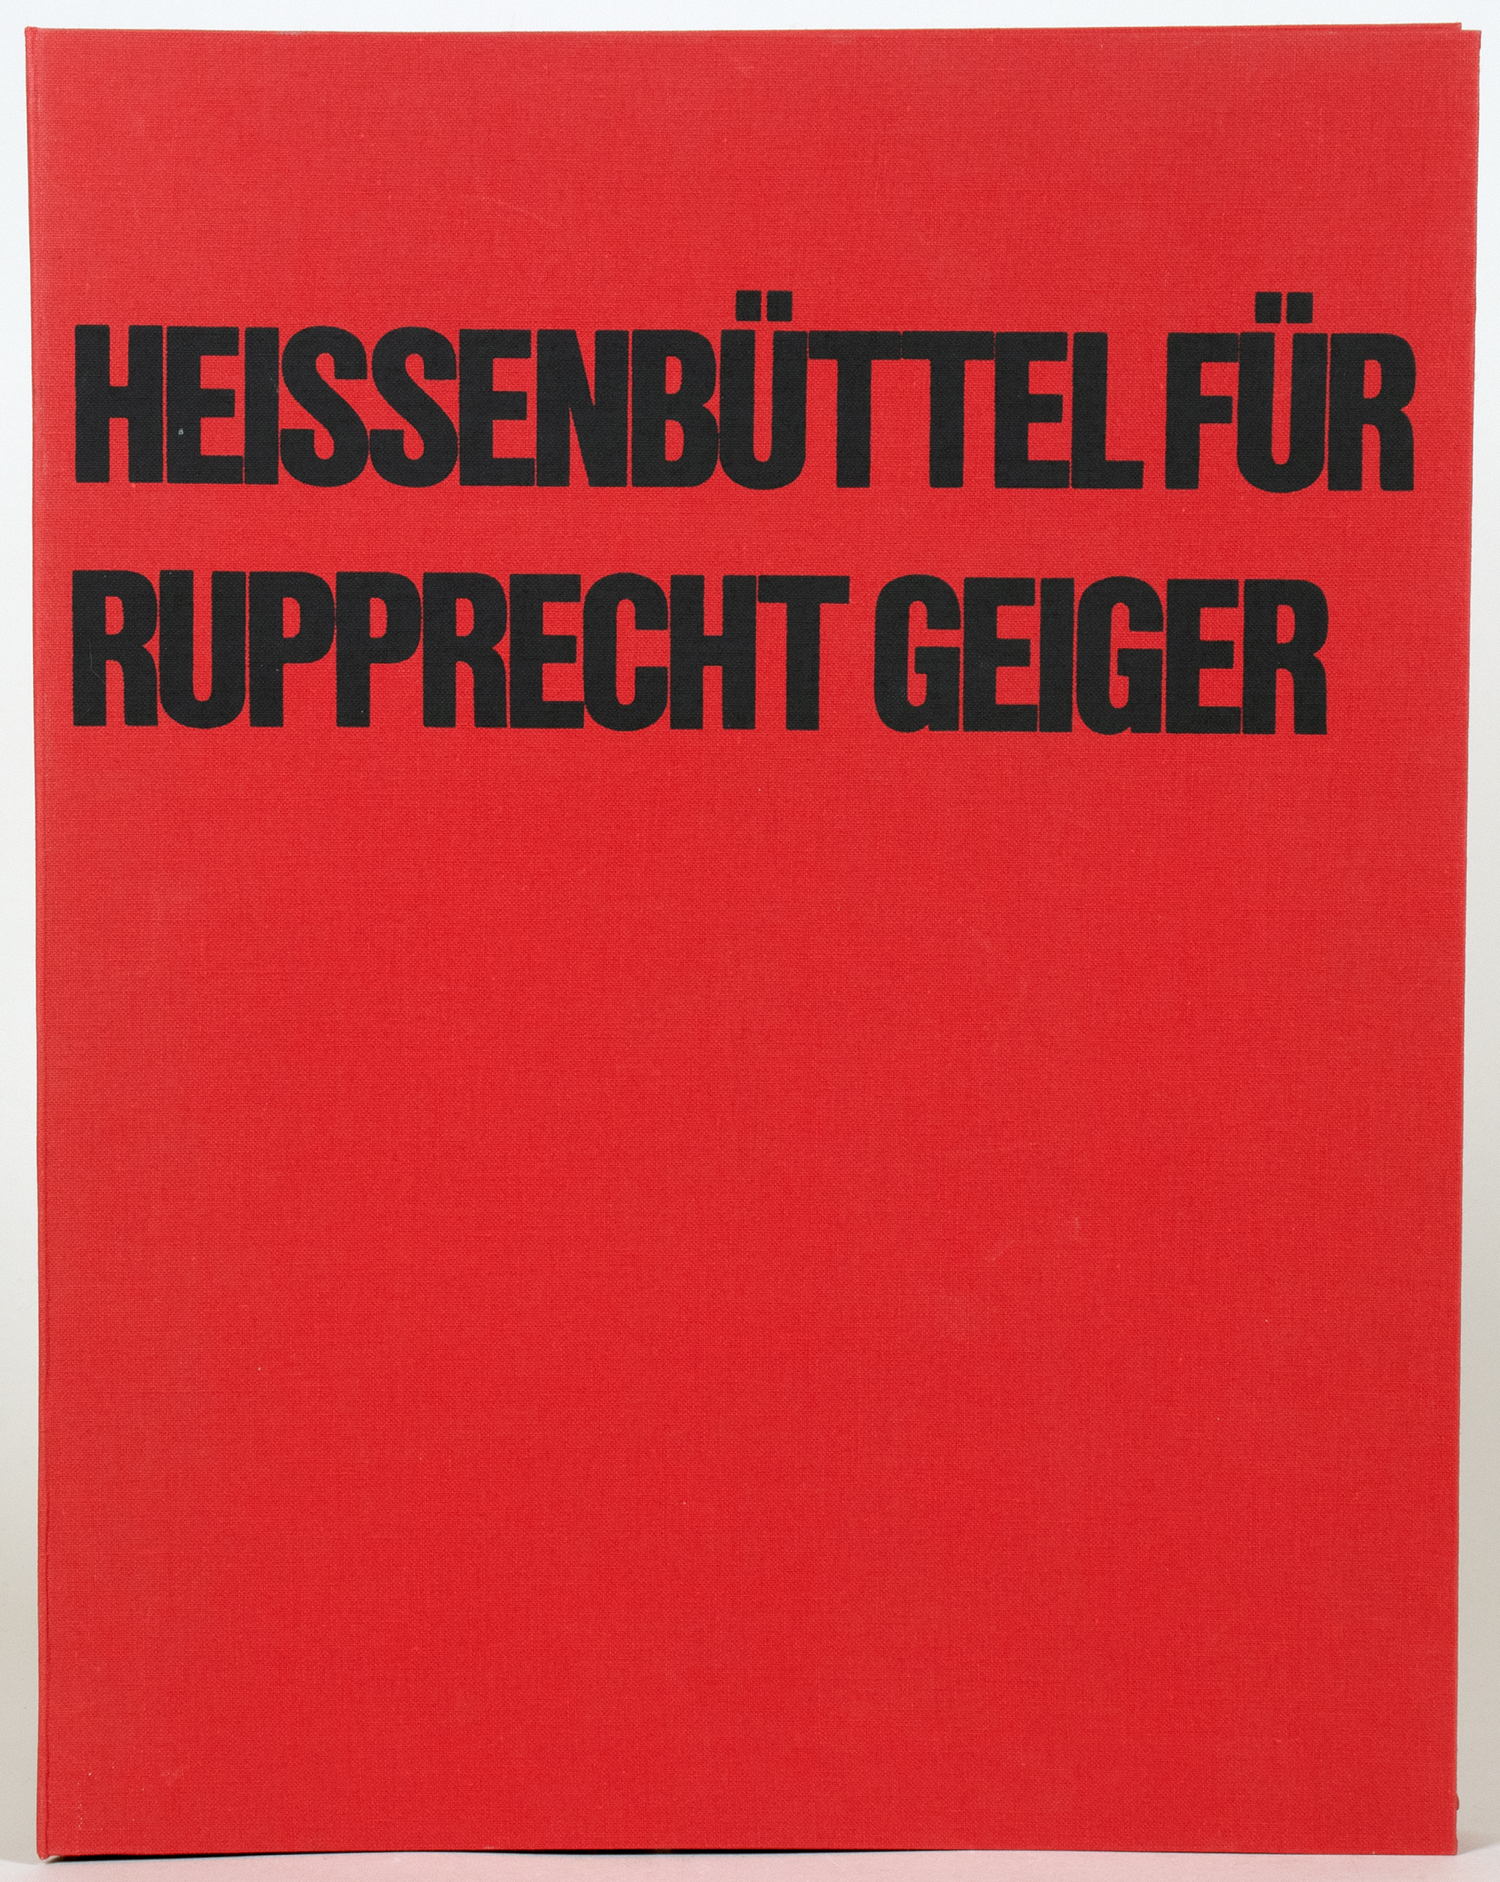 Rupprecht Geiger - Helmut Heissenbüttel. Klappentextgelegenheitsgedicht. - Image 2 of 3